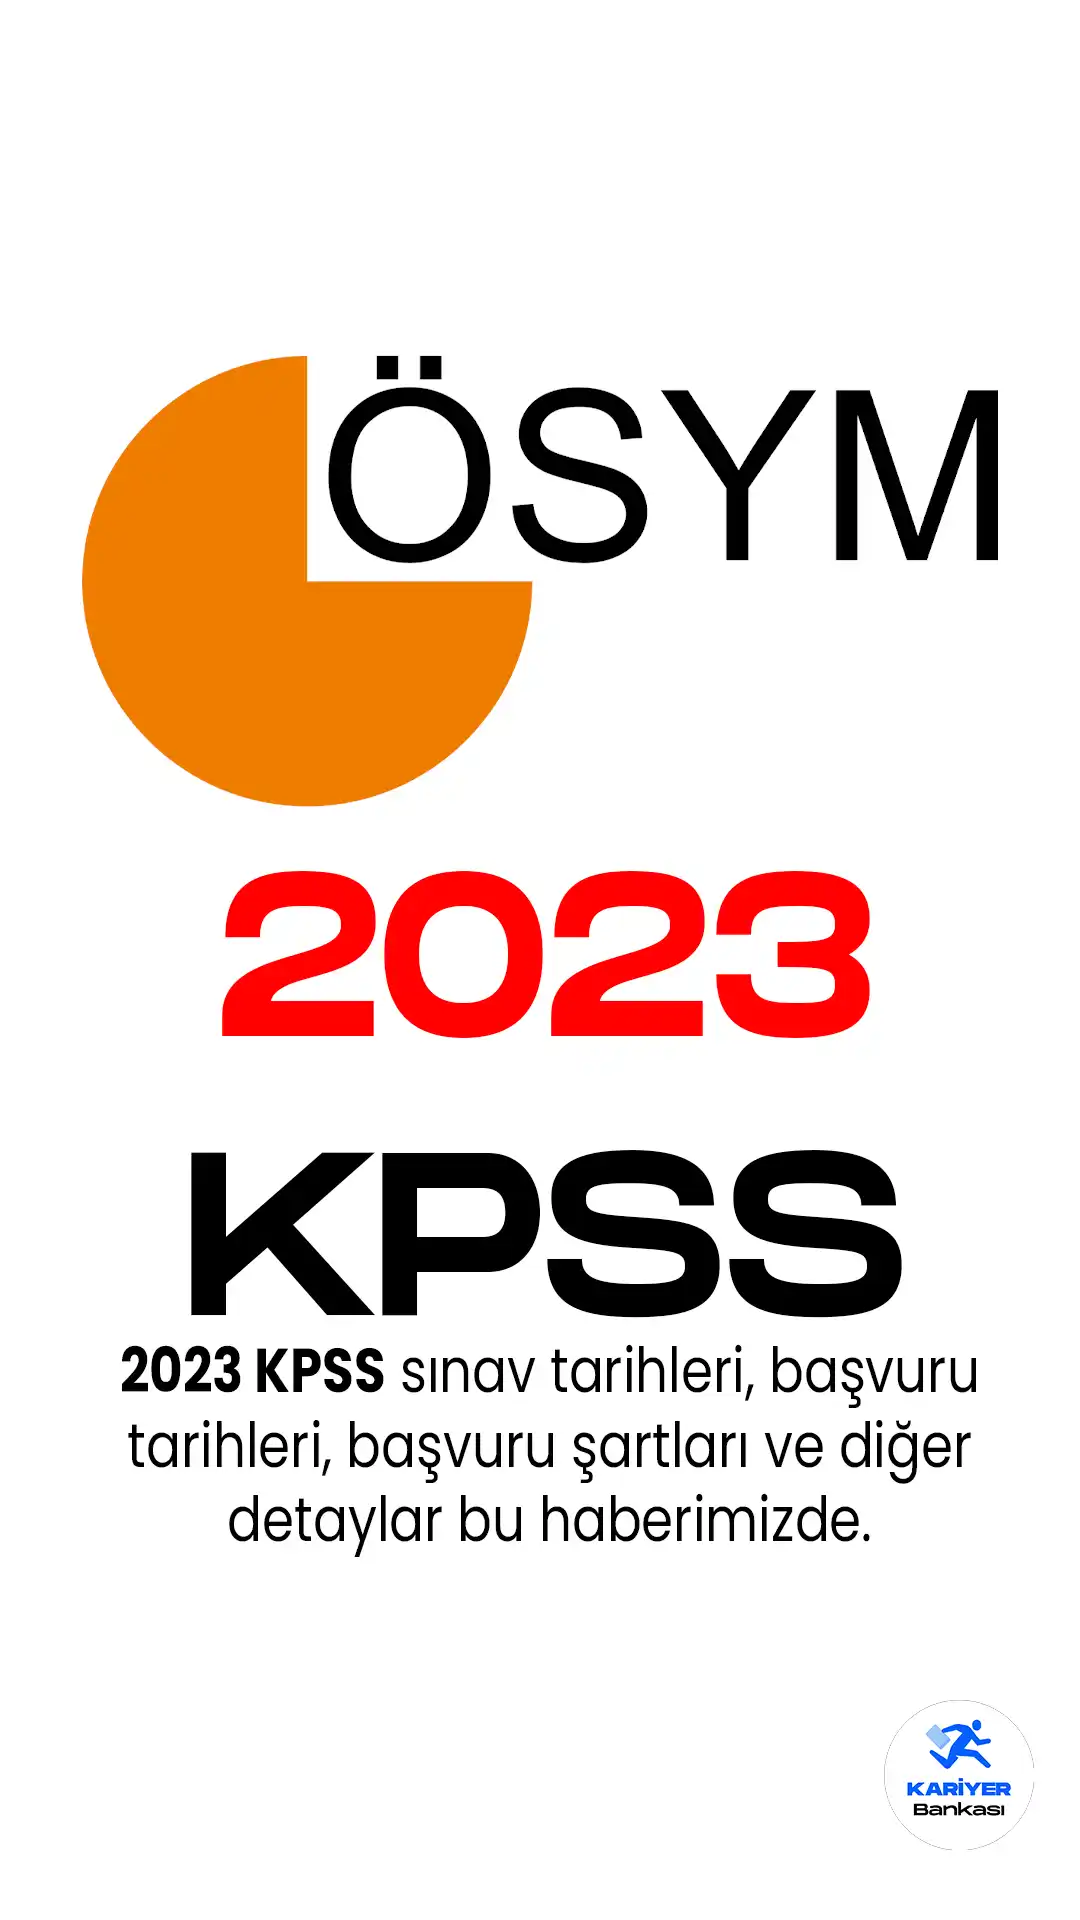 2023 KPSS için 16 Mayıs 2023 tarihinde başlayan başvuru işlemleri 29 Mayıs 2023 tarihine kadar devam edecek.